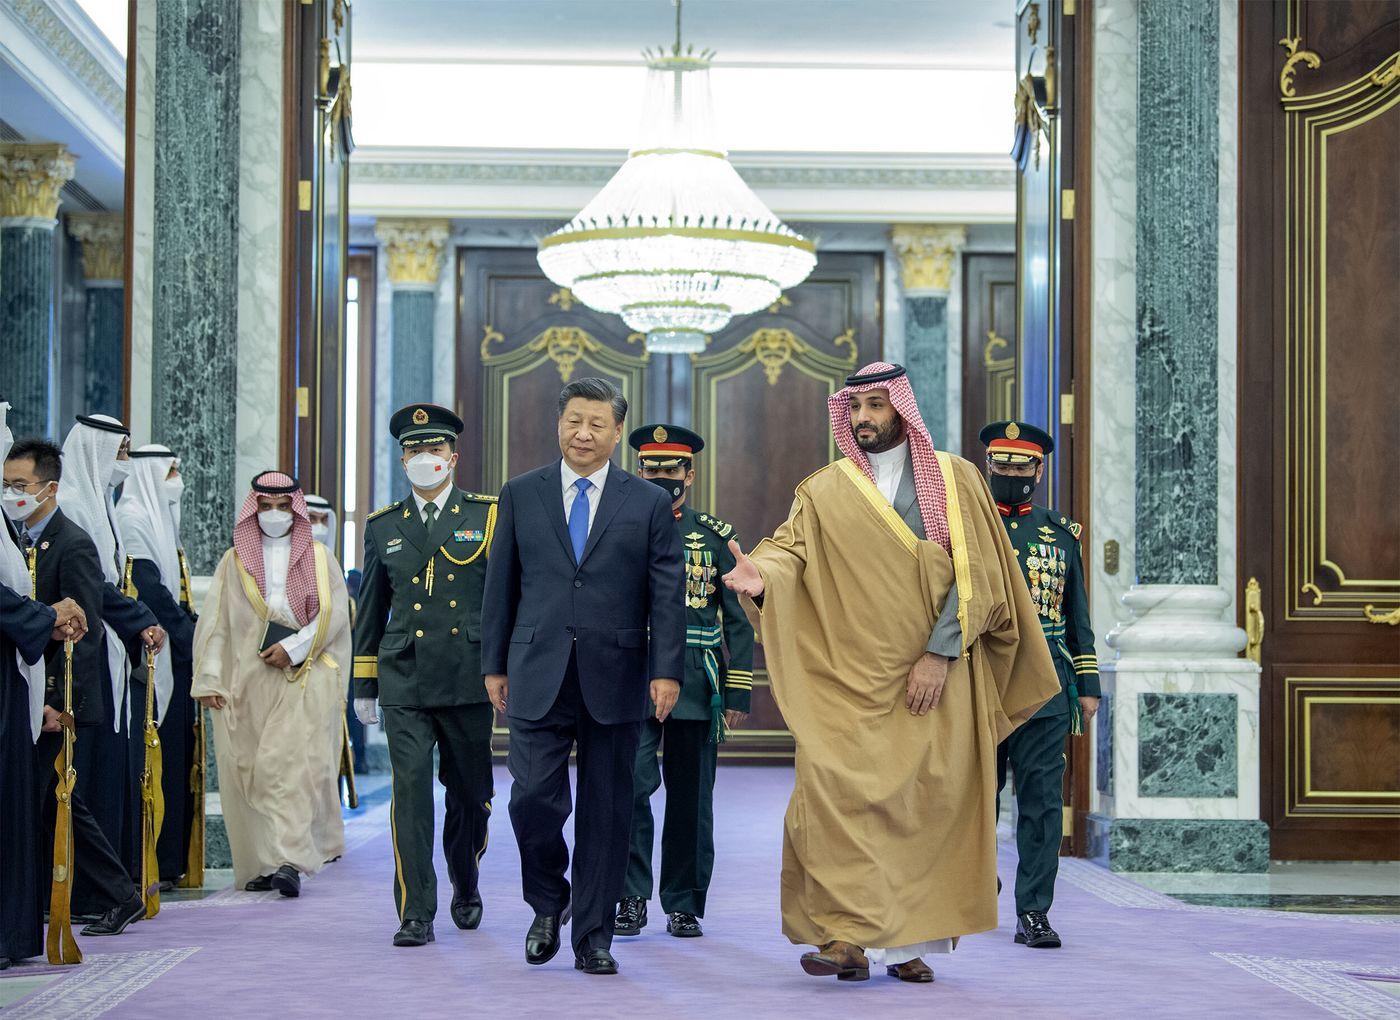 اعلام آمادگی چین برای همکاری نظامی با کشورهای حاشیه خلیج فارس